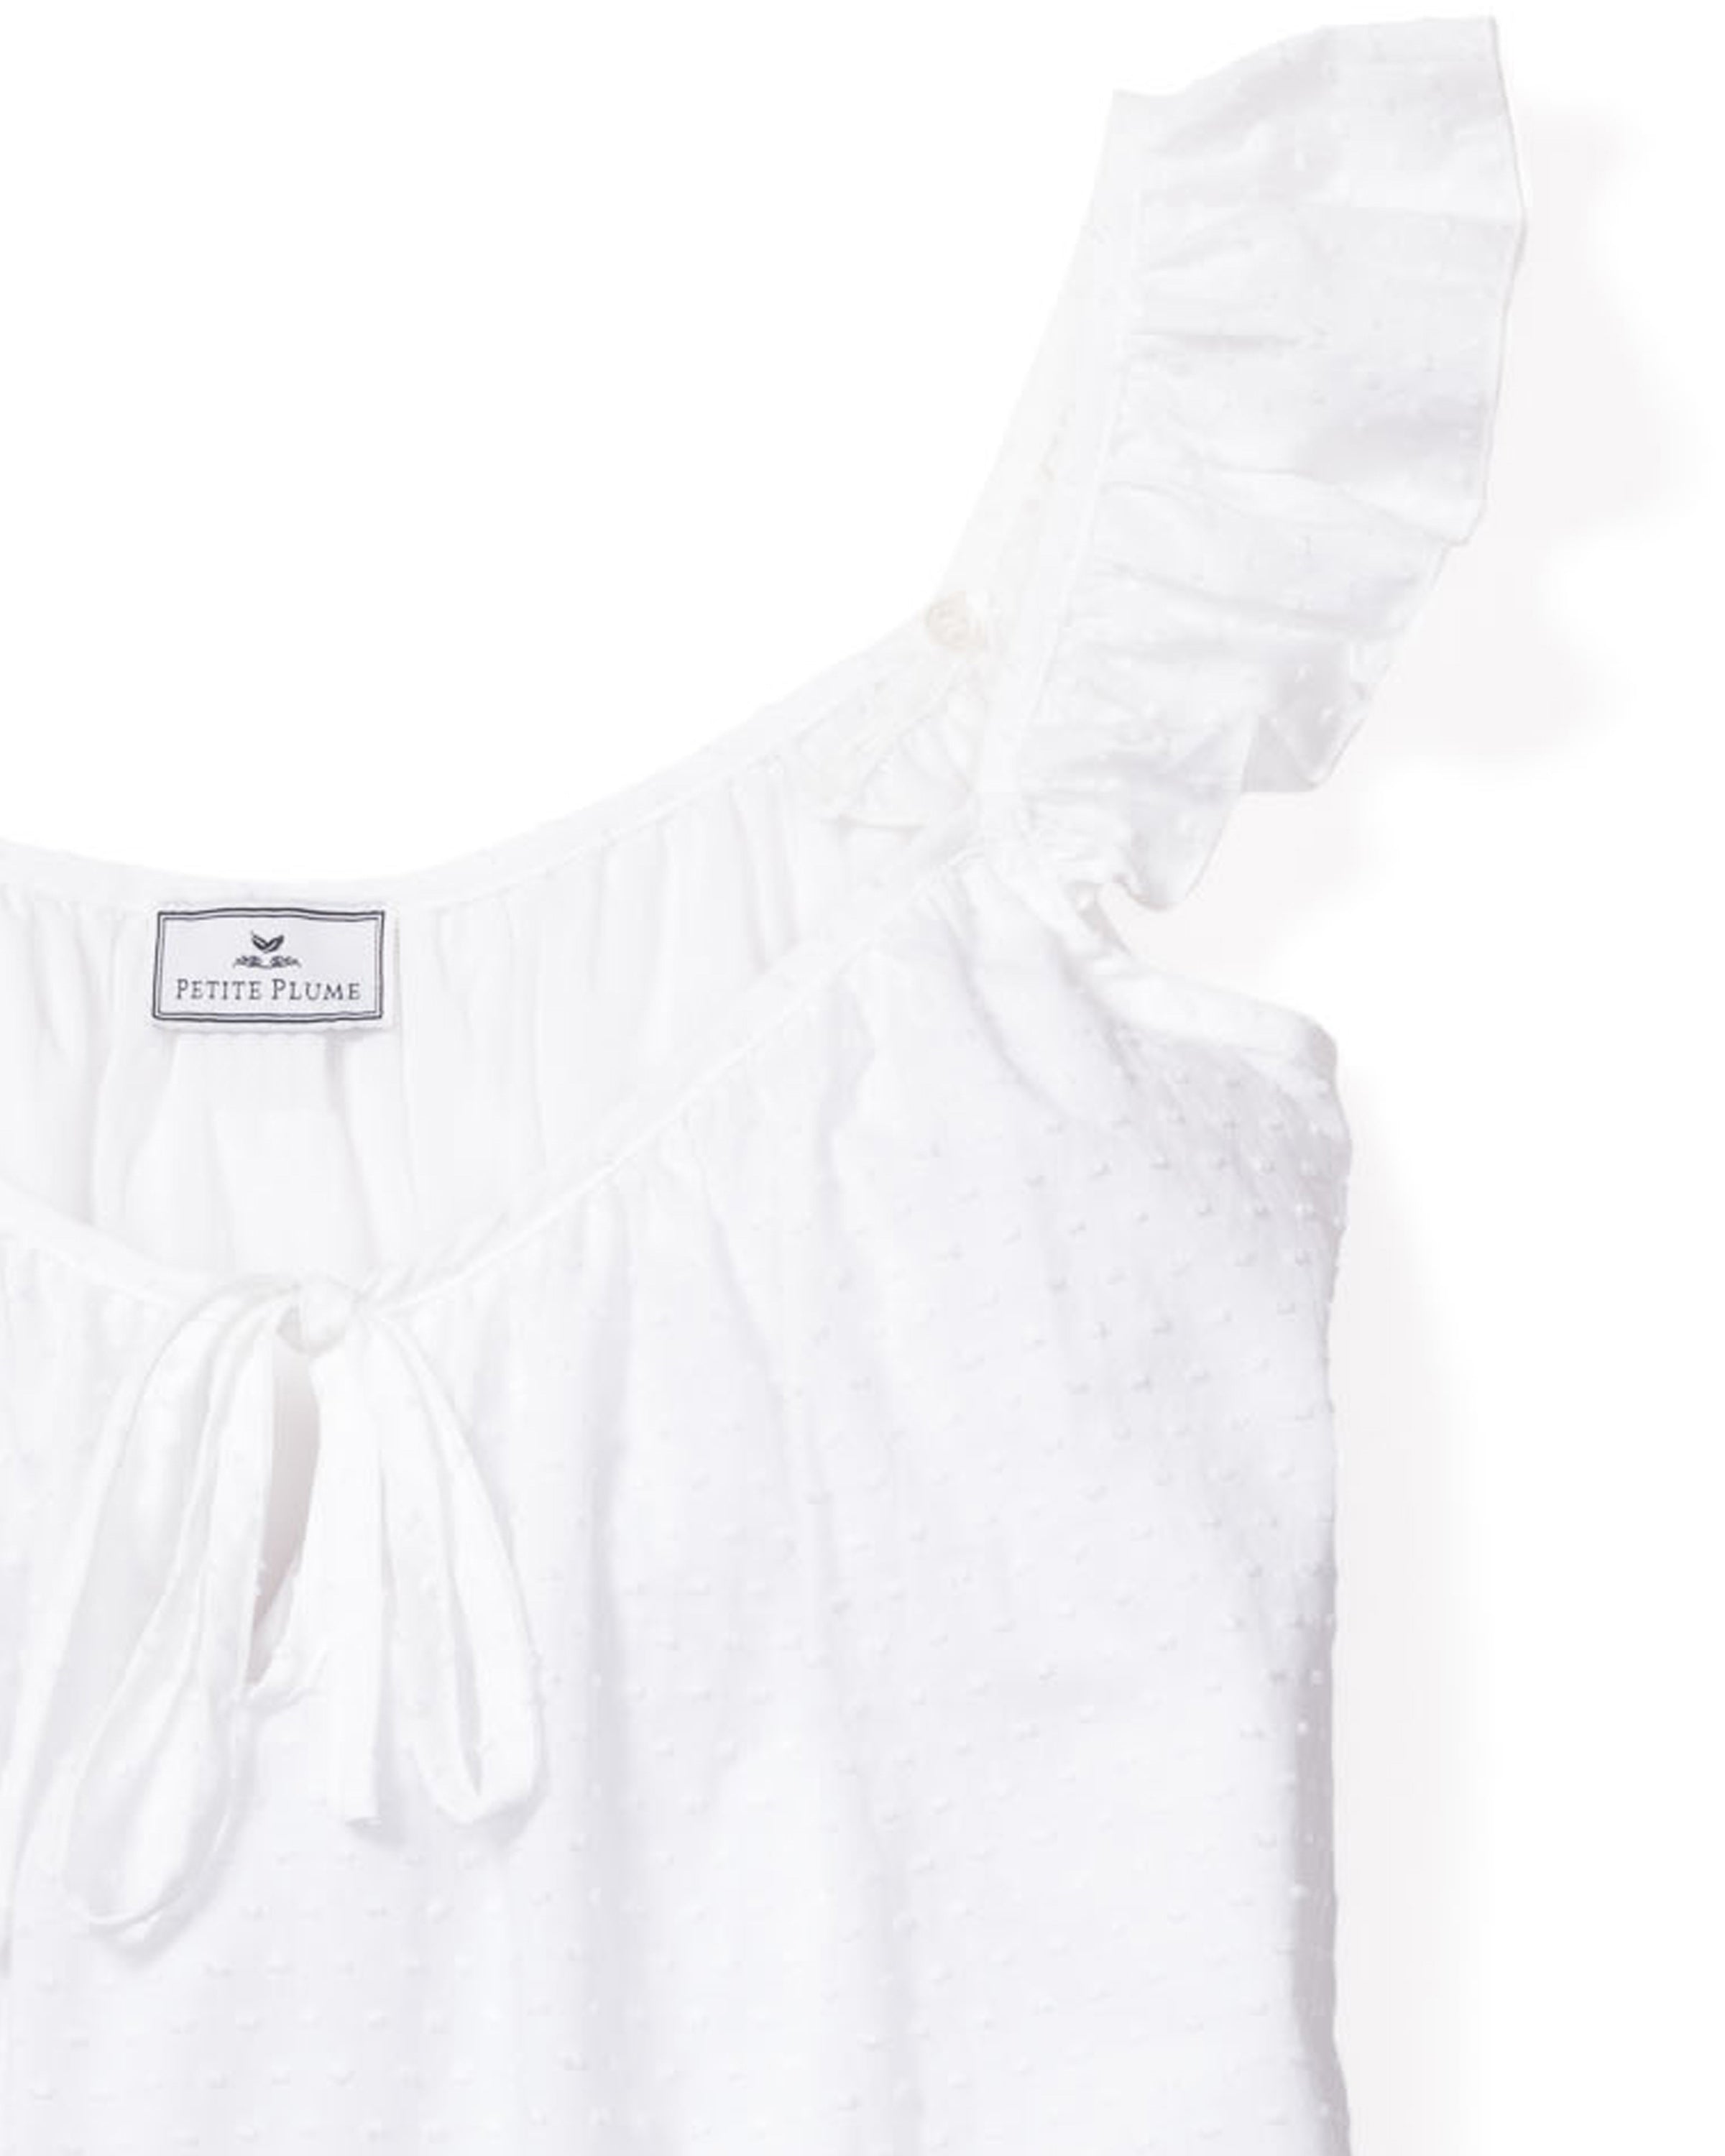 Women's Swiss Dots Celeste Nightgown in White